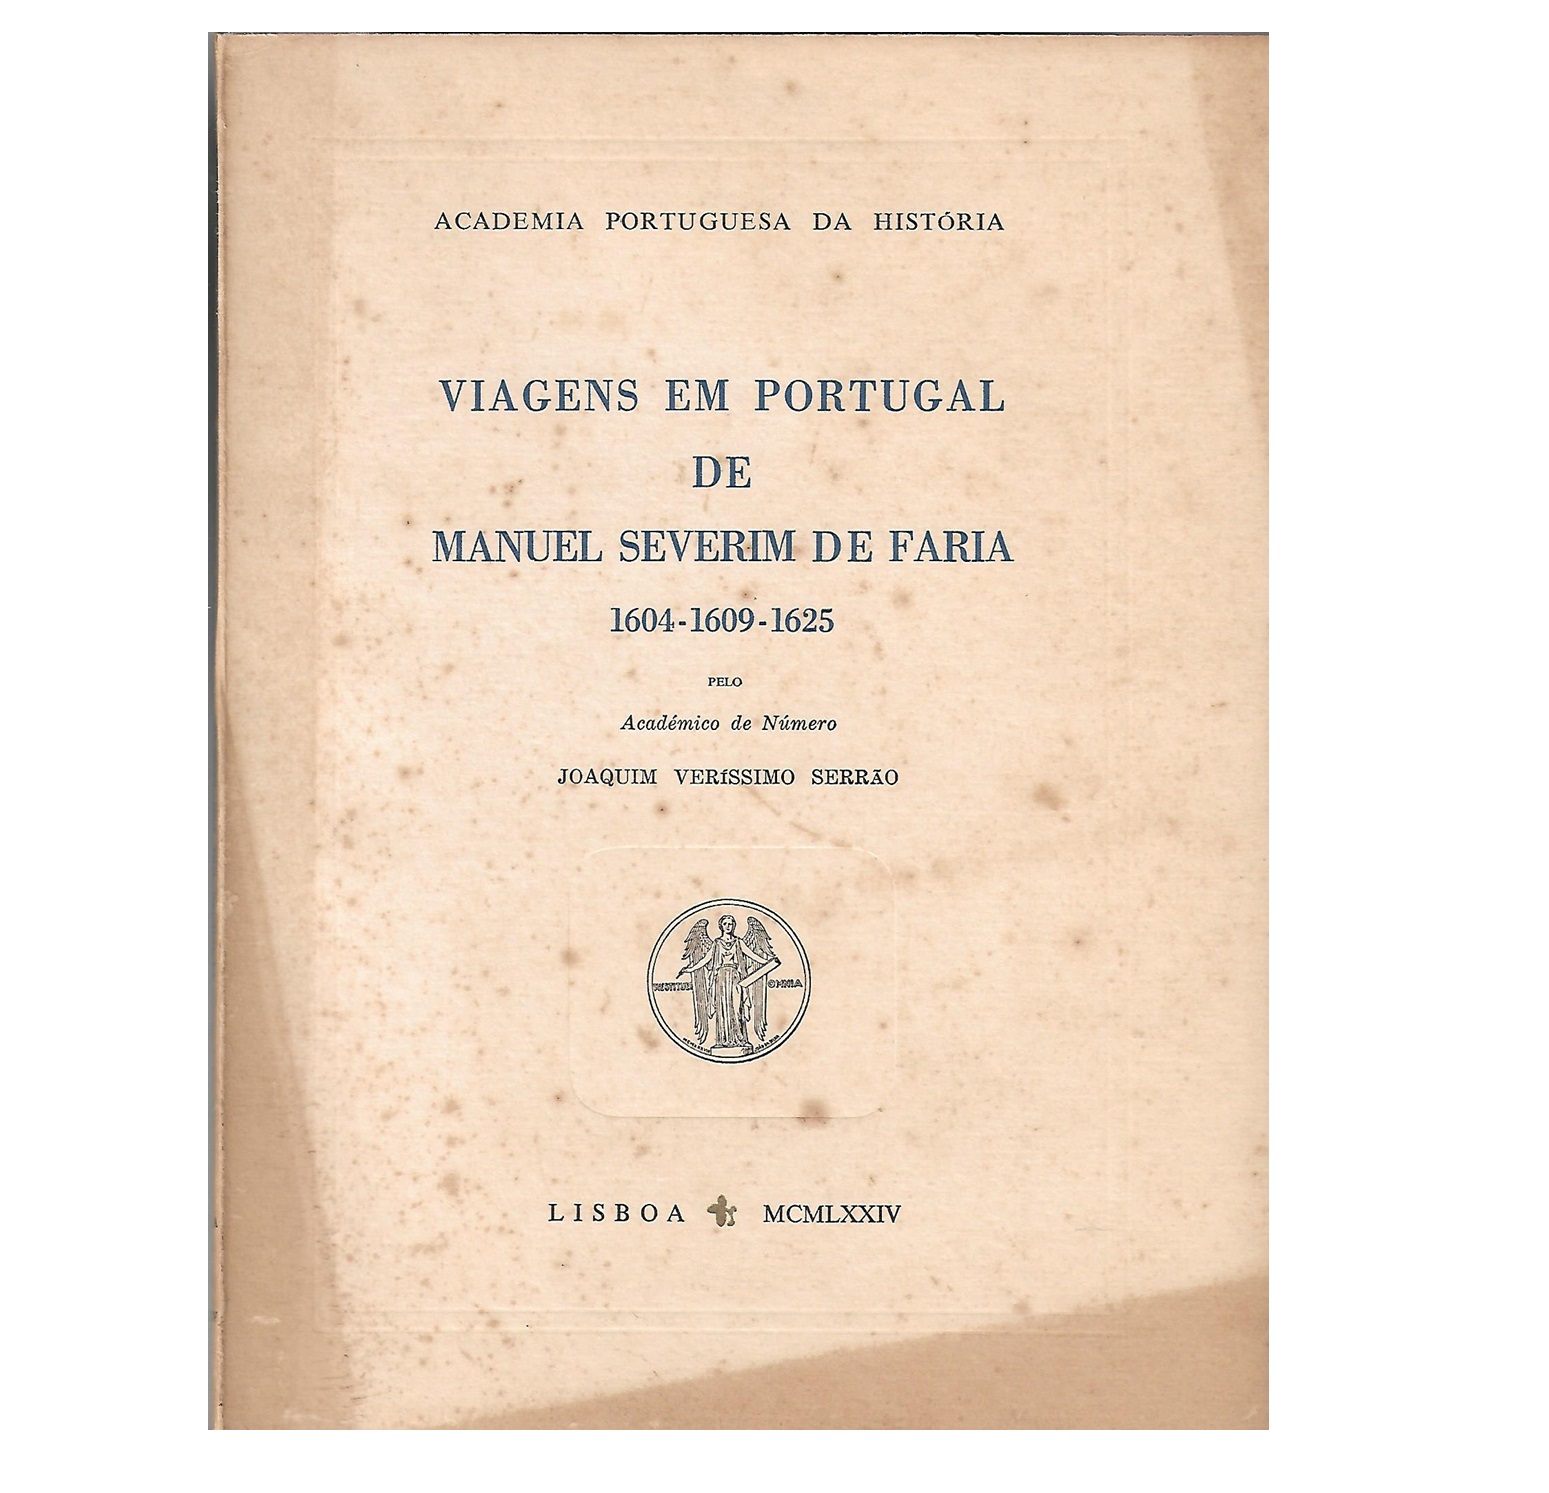 VIAGENS EM PORTUGAL DE MANUEL SEVERIM DE FARIA 1604-1609-1625